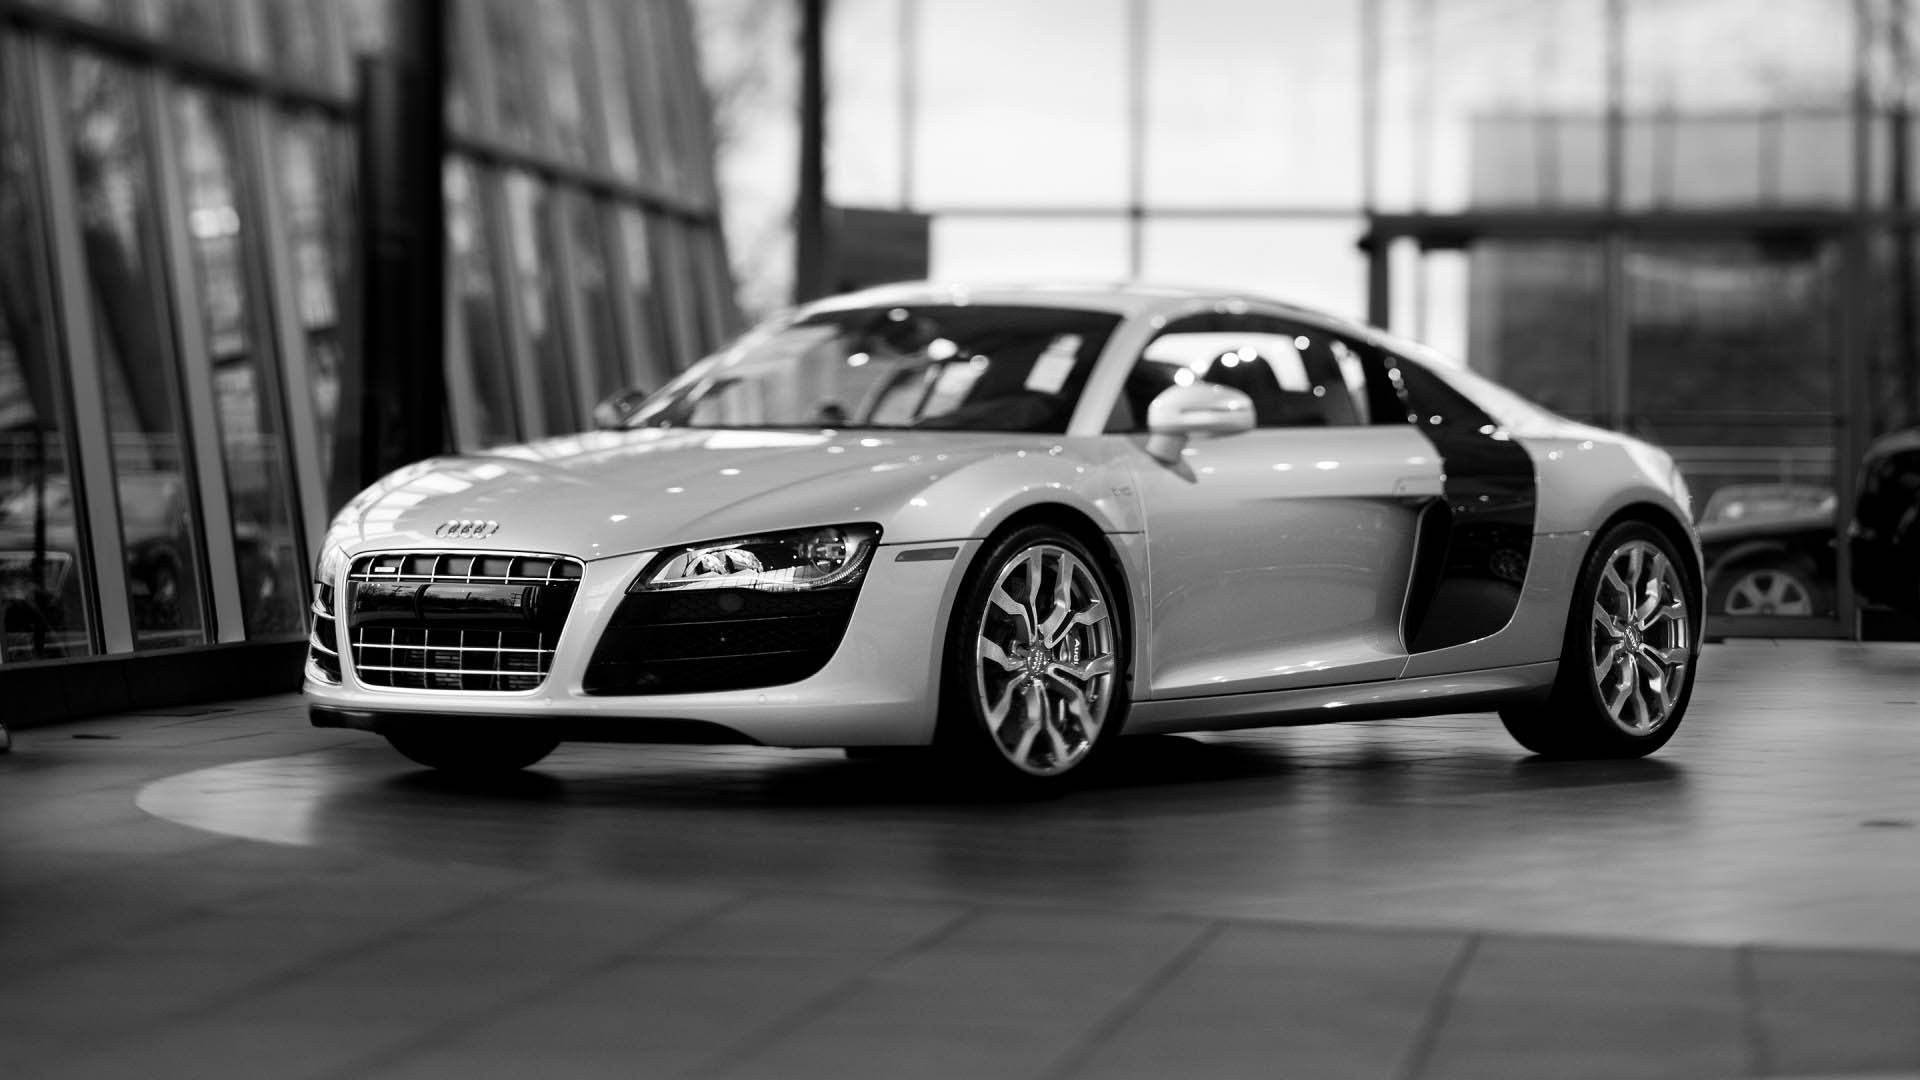 [46+] Audi HD Wallpapers 1080p on WallpaperSafari